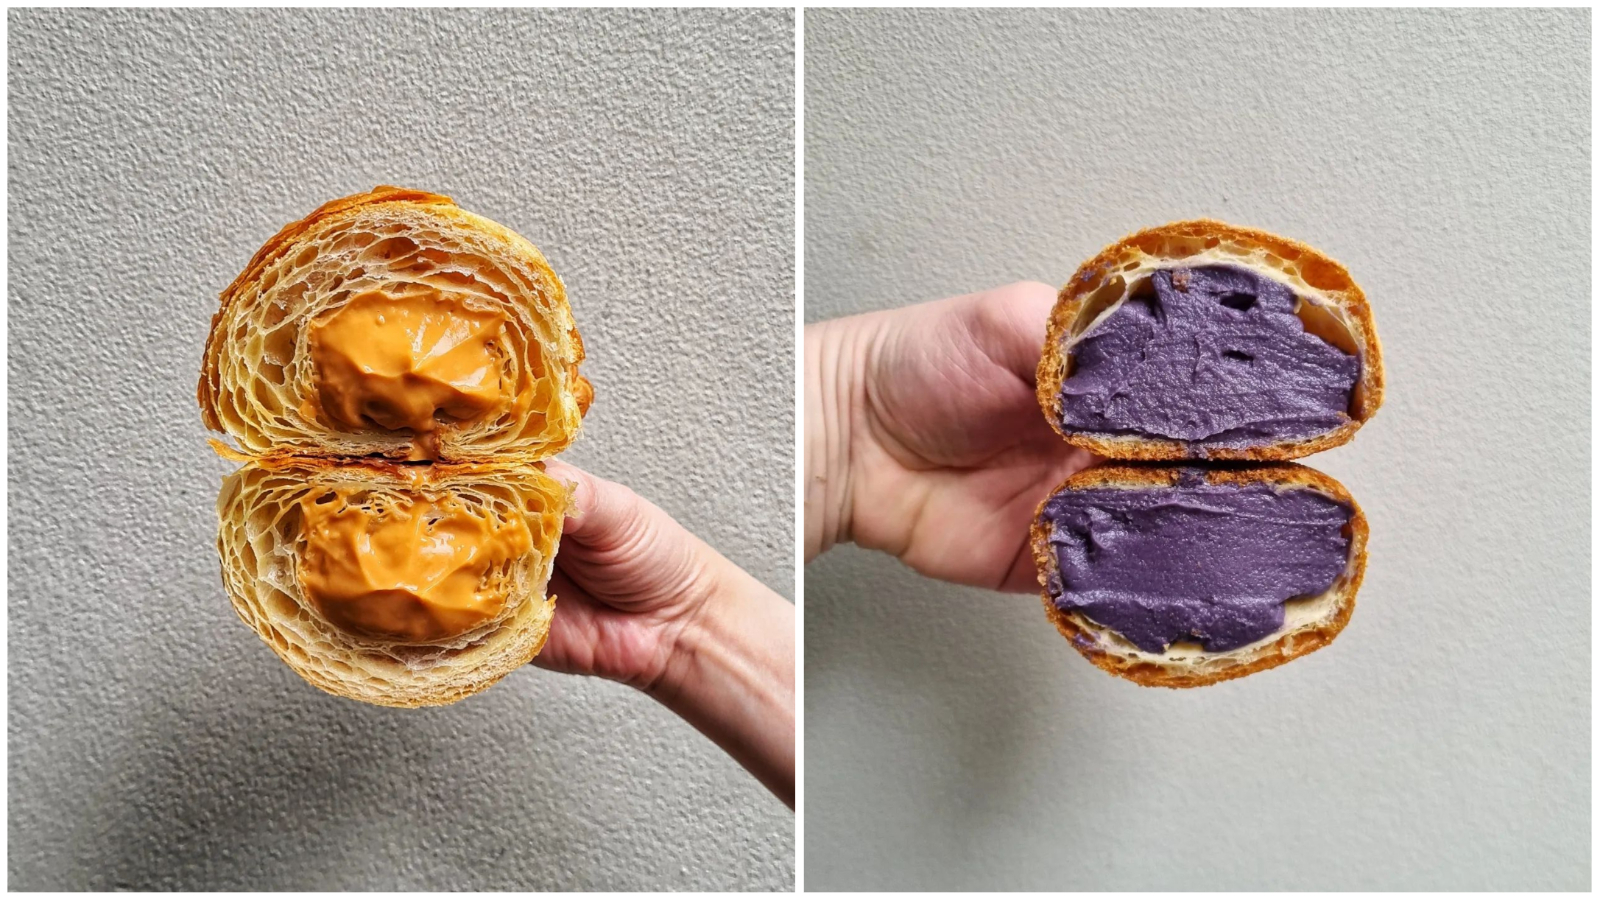 Instagram profil zanatske pekarnice čije fotografije ne možemo prestati gledati